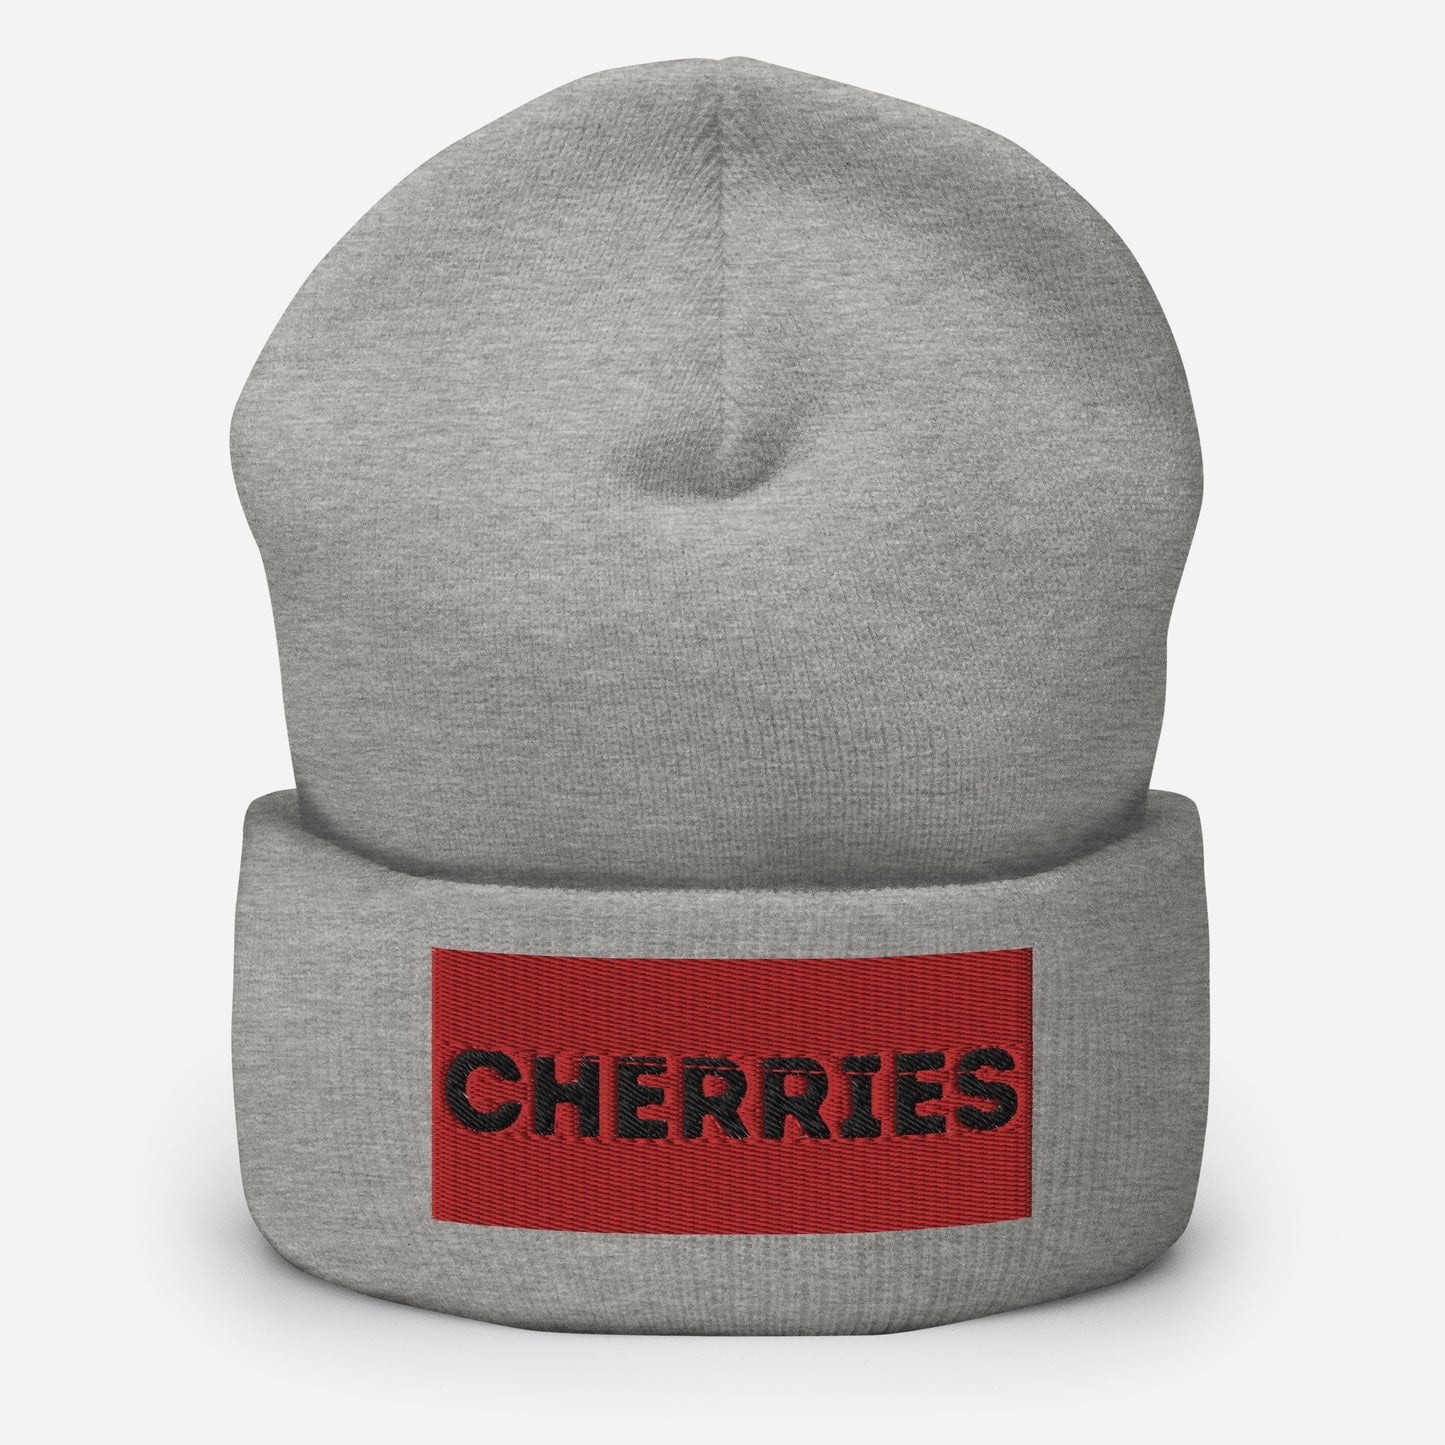 Cherries Cuffed Beanie Hat